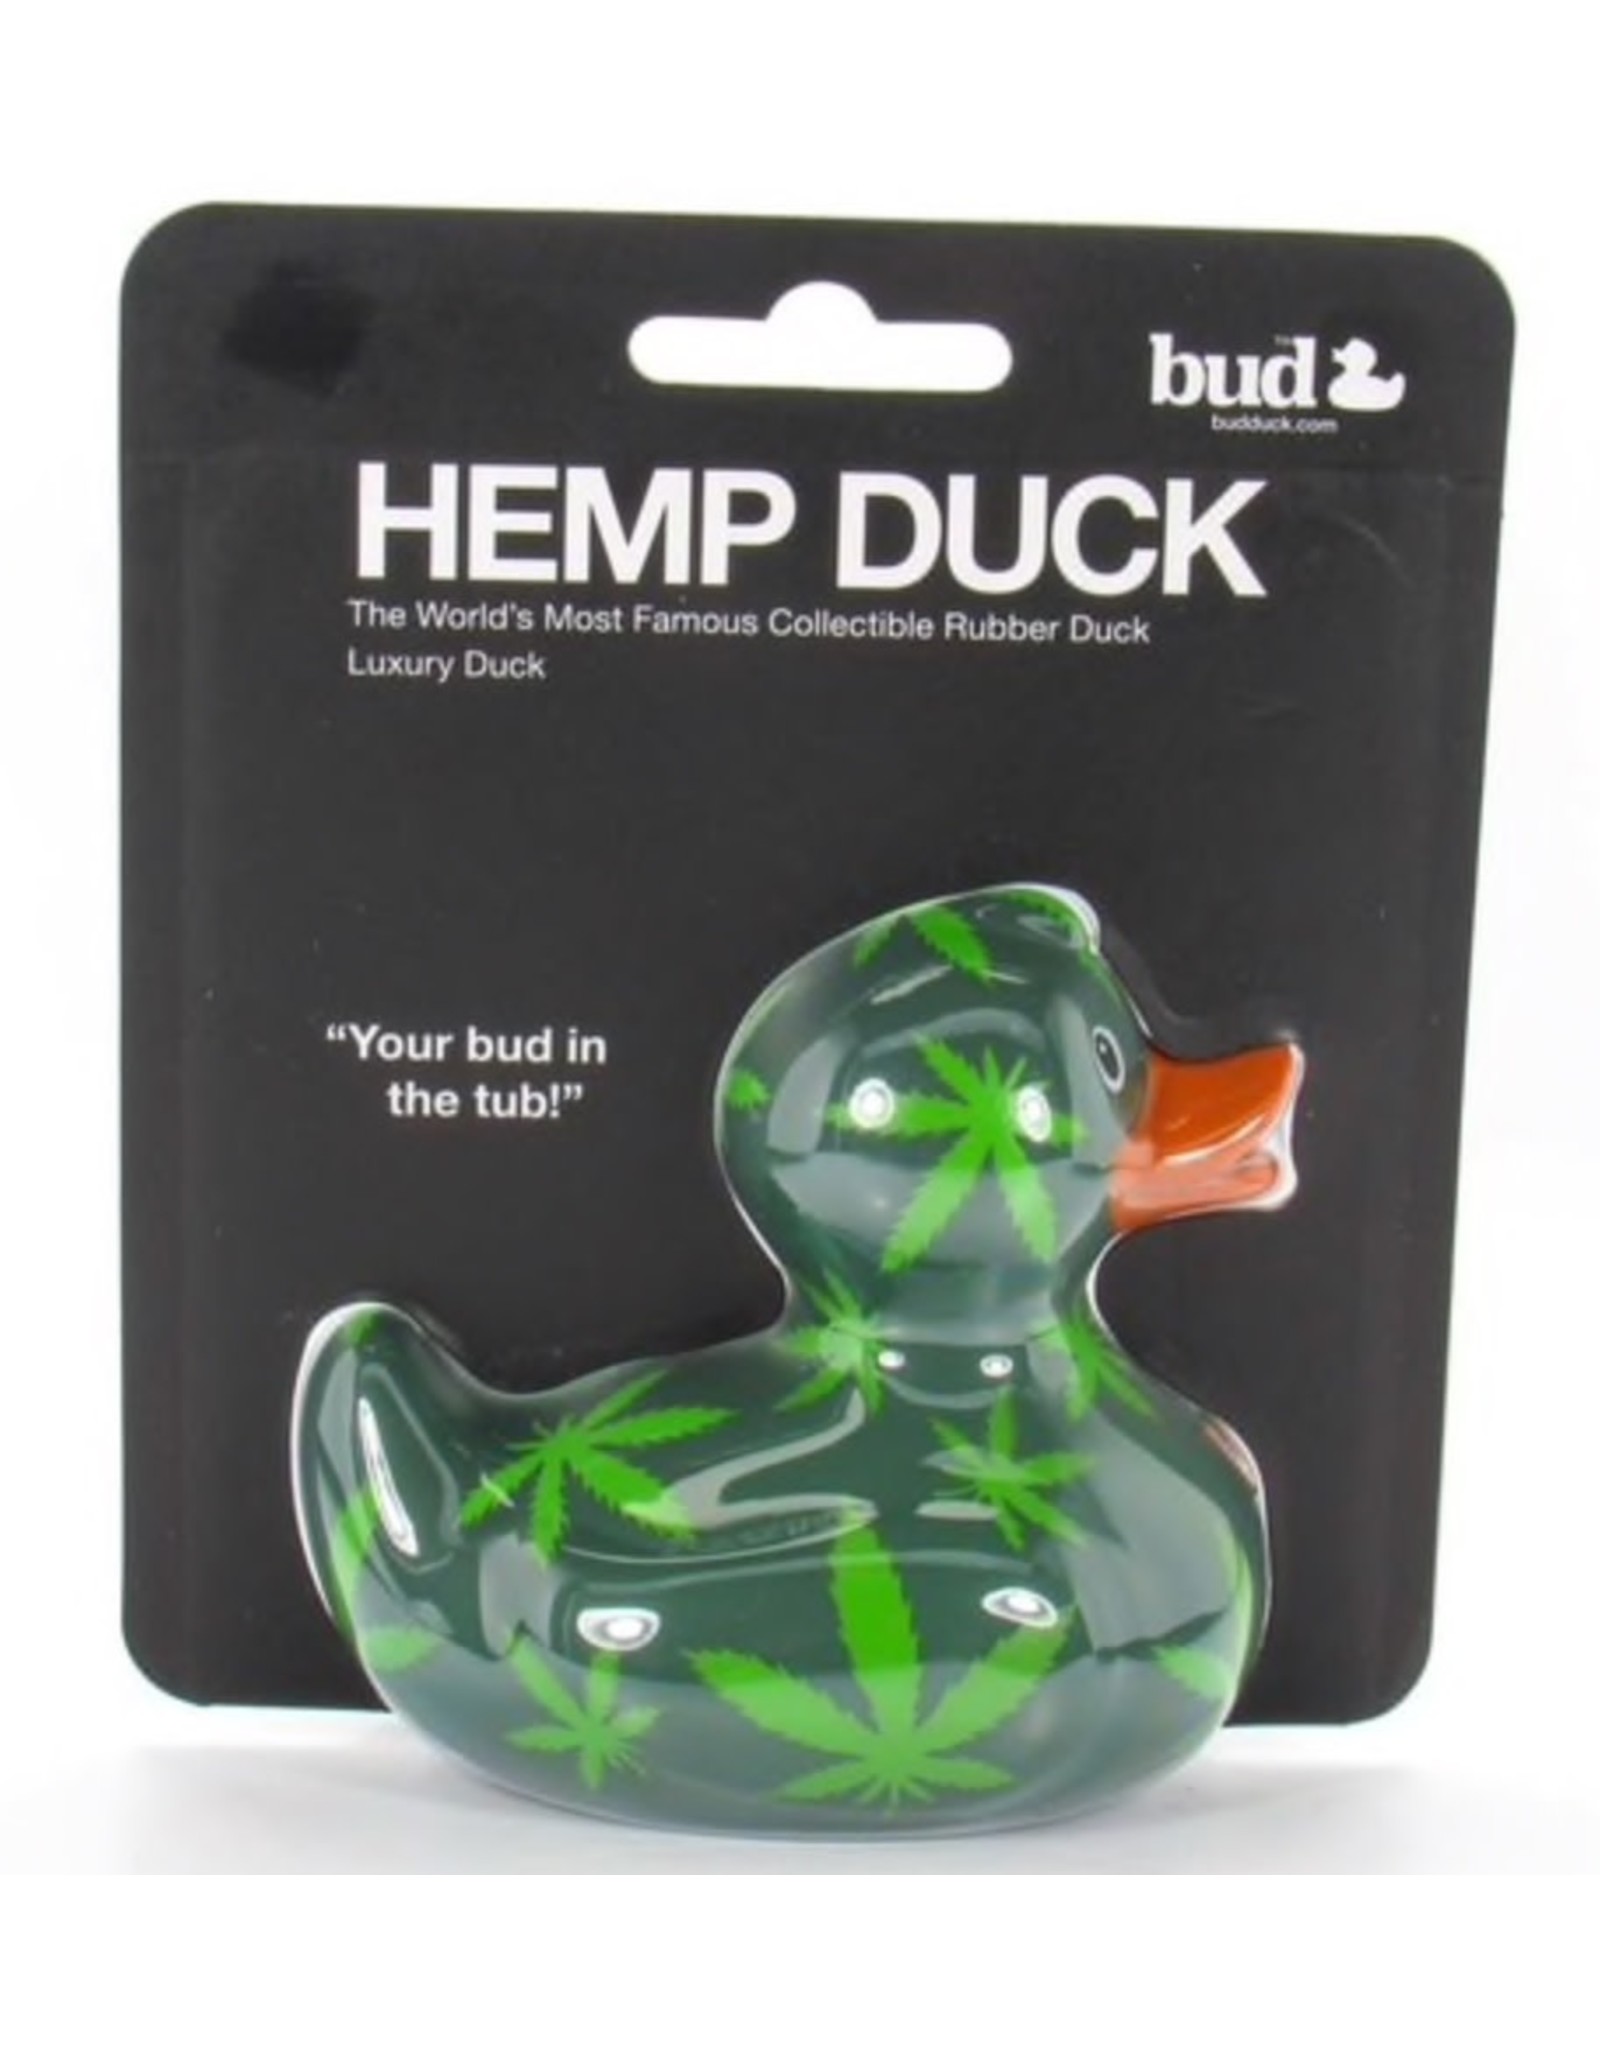 Hemp Duck